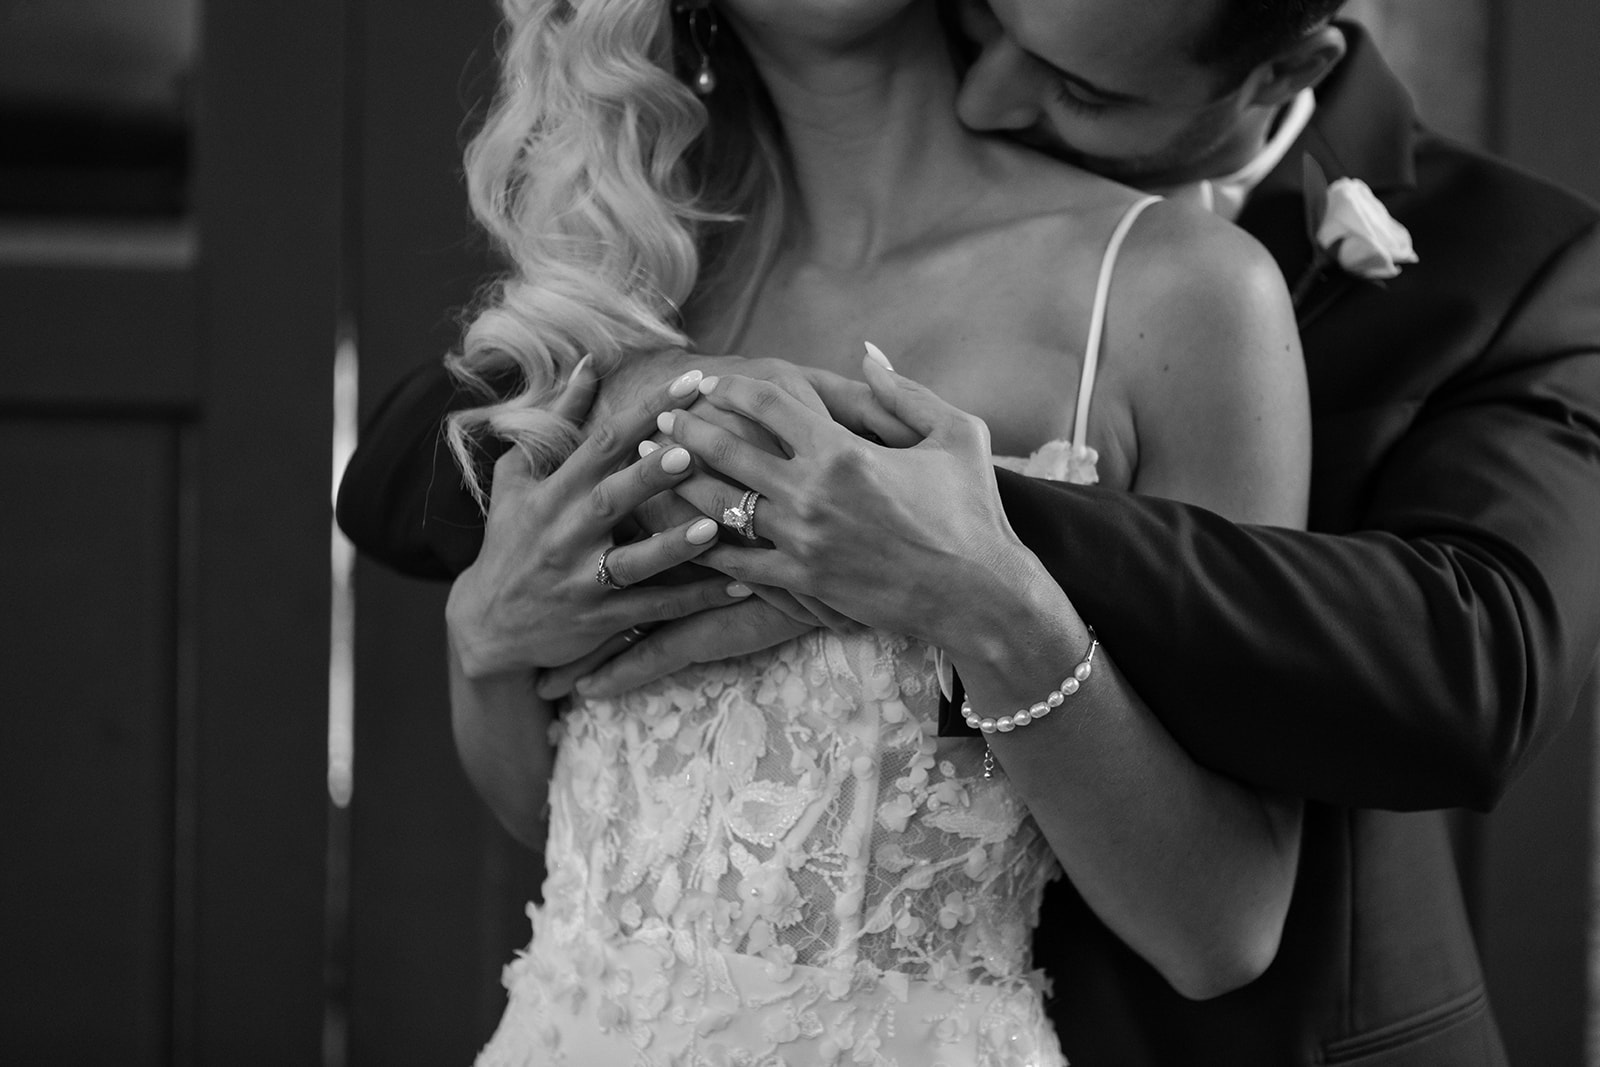 Bride and groom's hands together while groom kisses her shoulder.